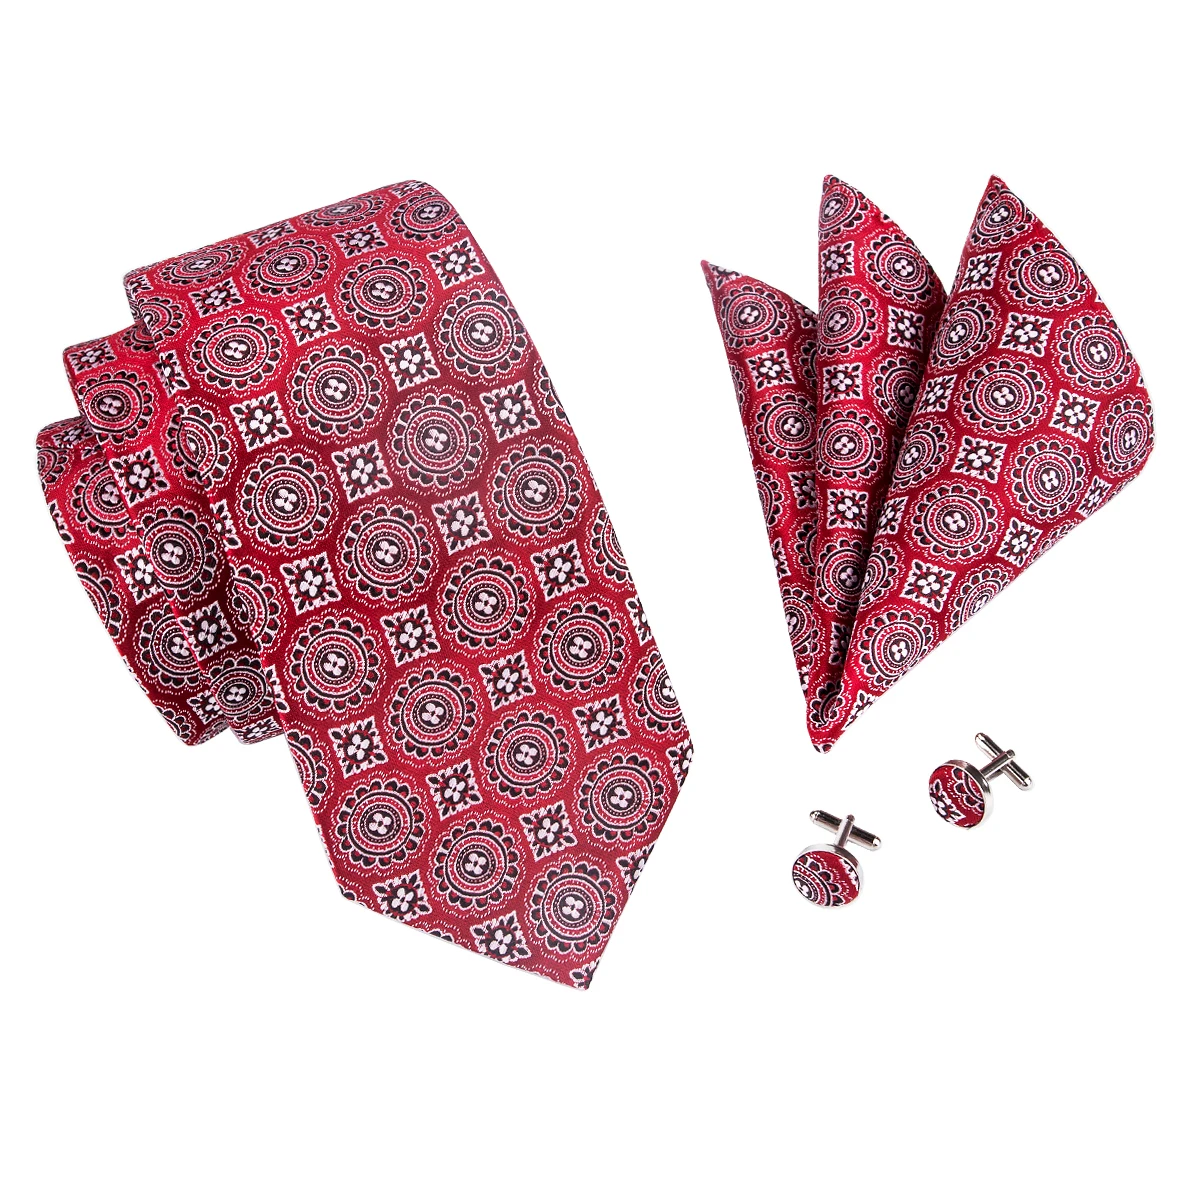 Hi-Tie бренд шелковые галстуки Набор для мужчин модный дизайн цветочный жакет тканый мужской Галстук платок Запонки Набор красный галстук C-1565